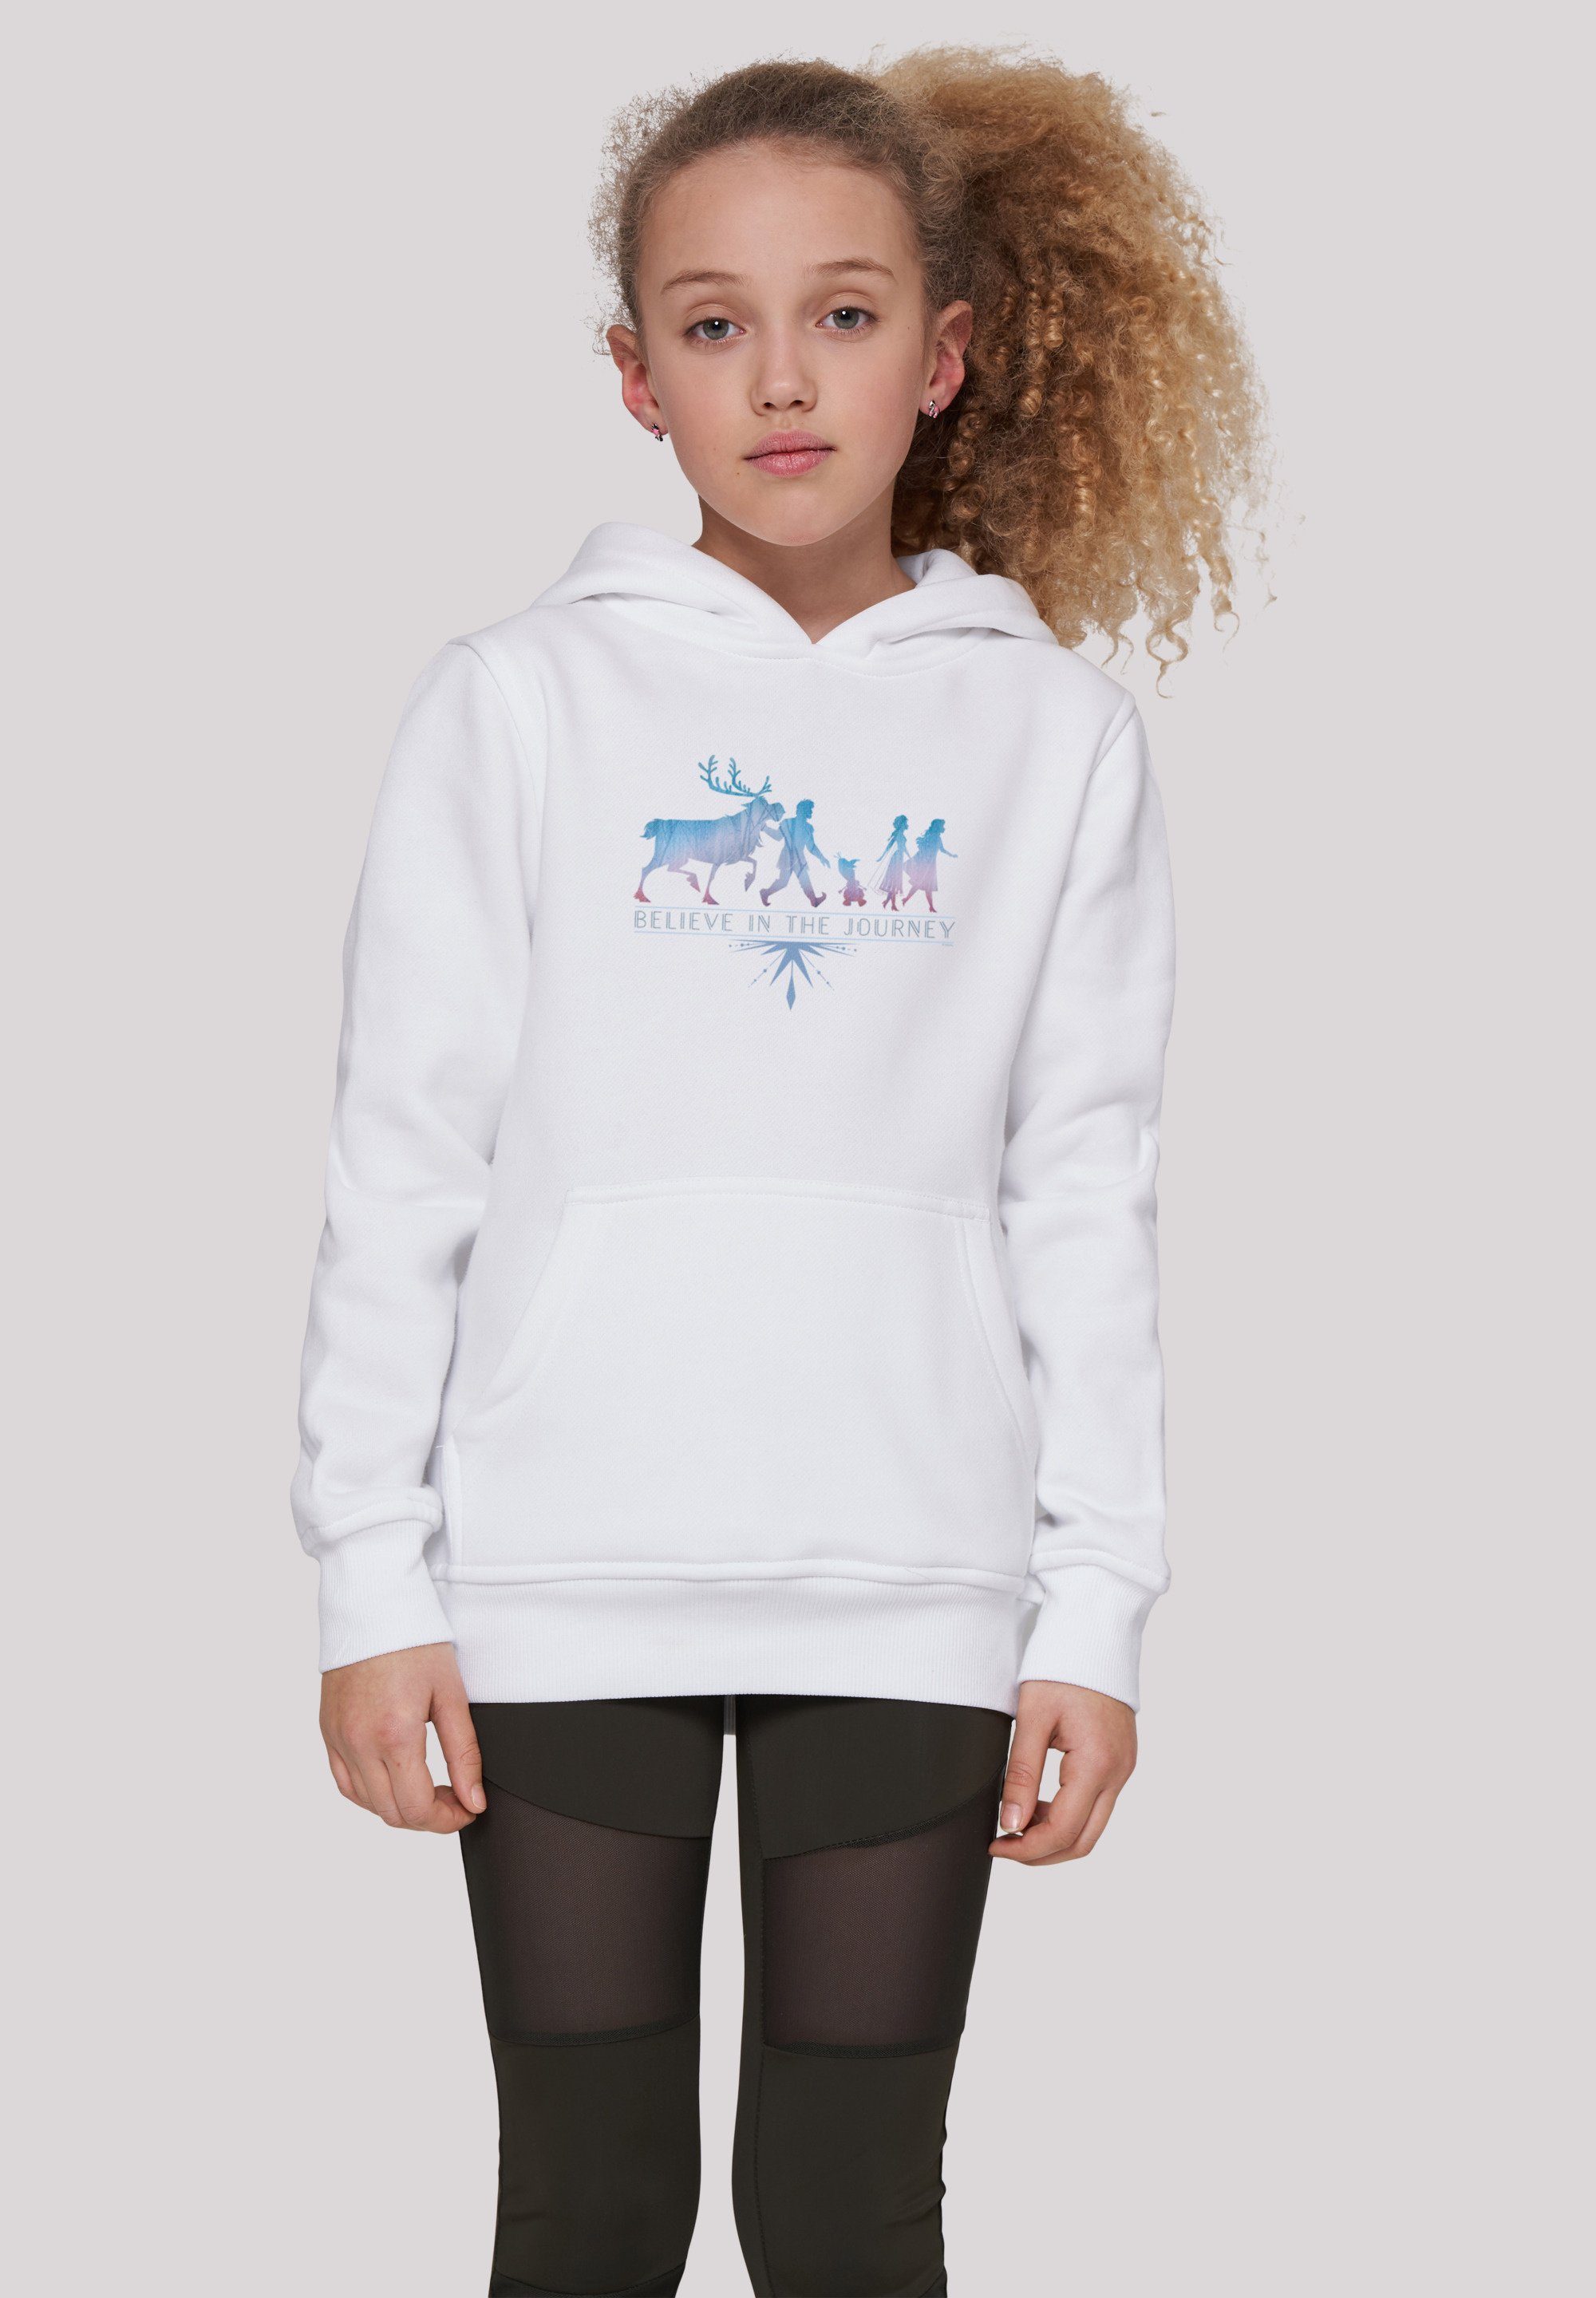 F4NT4STIC Sweatshirt Disney Frozen Kinder,Premium 2 weiß Journey Believe Merch,Jungen,Mädchen,Bedruckt The Unisex In